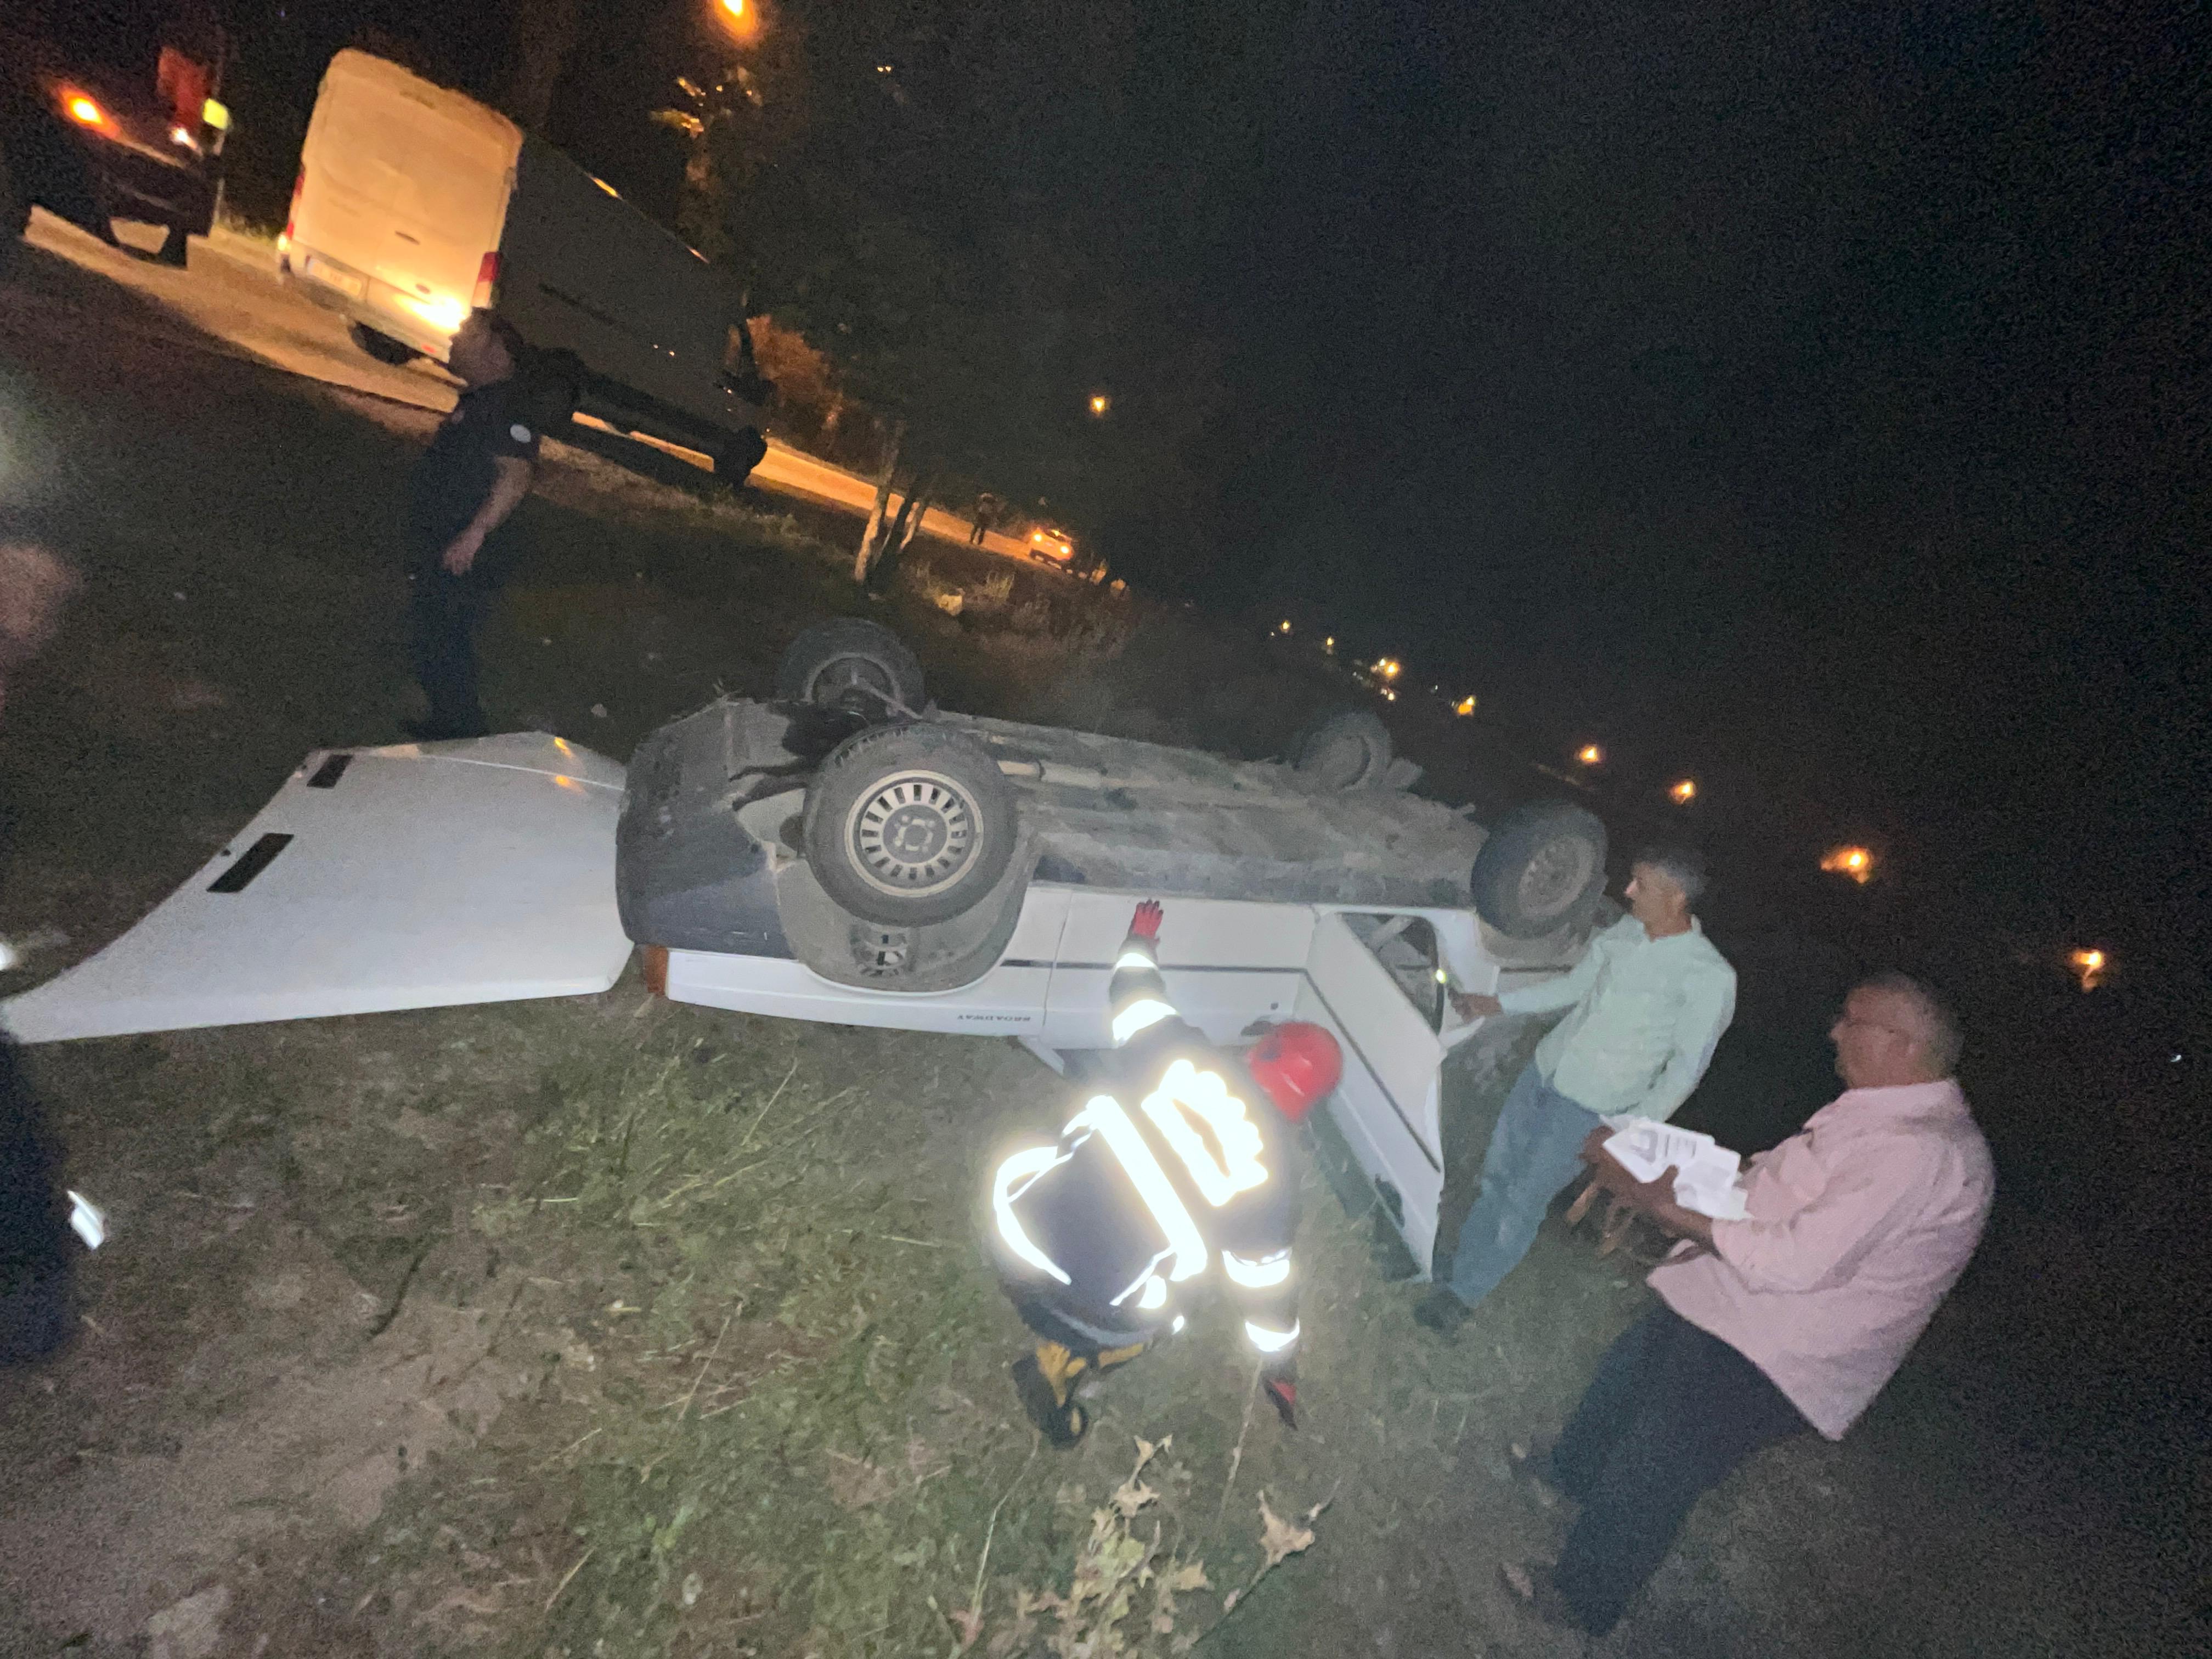 Adana'da otomobil takla attı: 1 yaralı